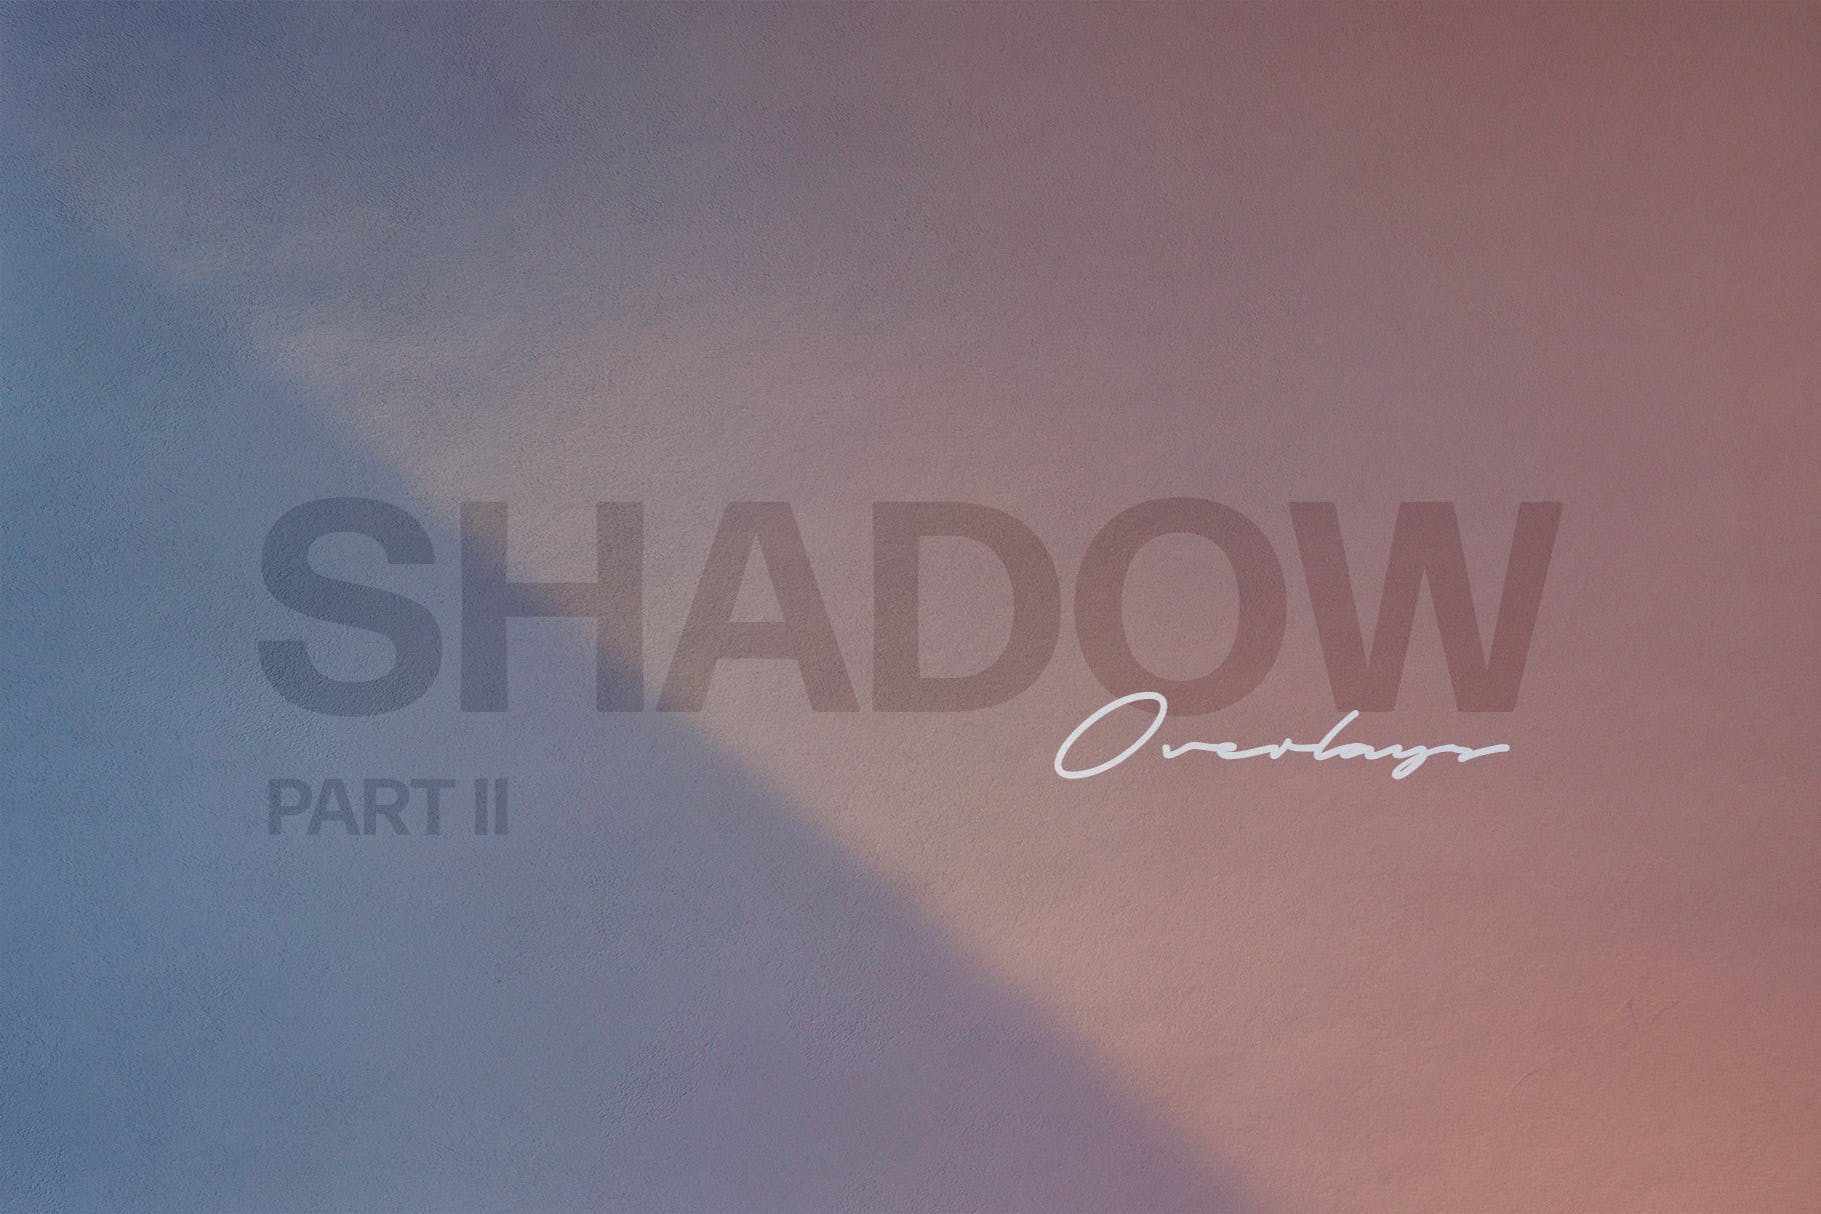 简单的阴影叠层背景素材v2 Shadow Play Photo Overlays Vol.2 图片素材 第1张